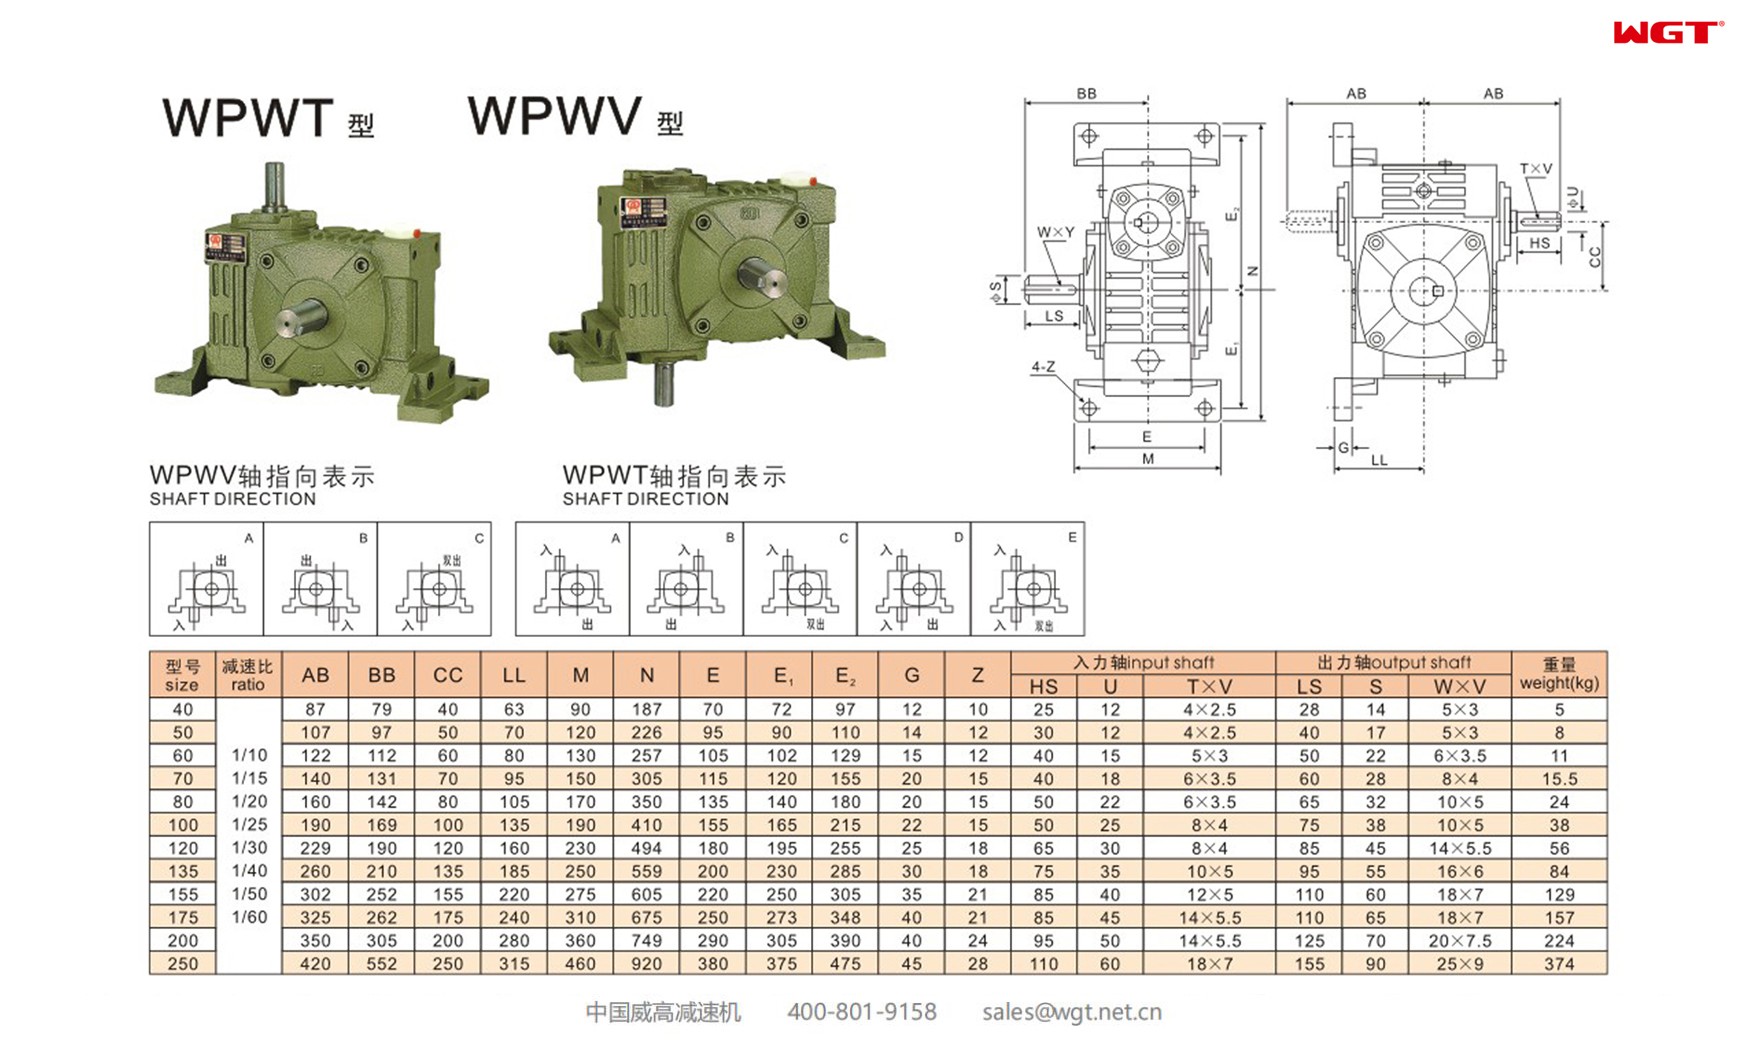 WPWT60 worm gear reducer universal speed reducer 